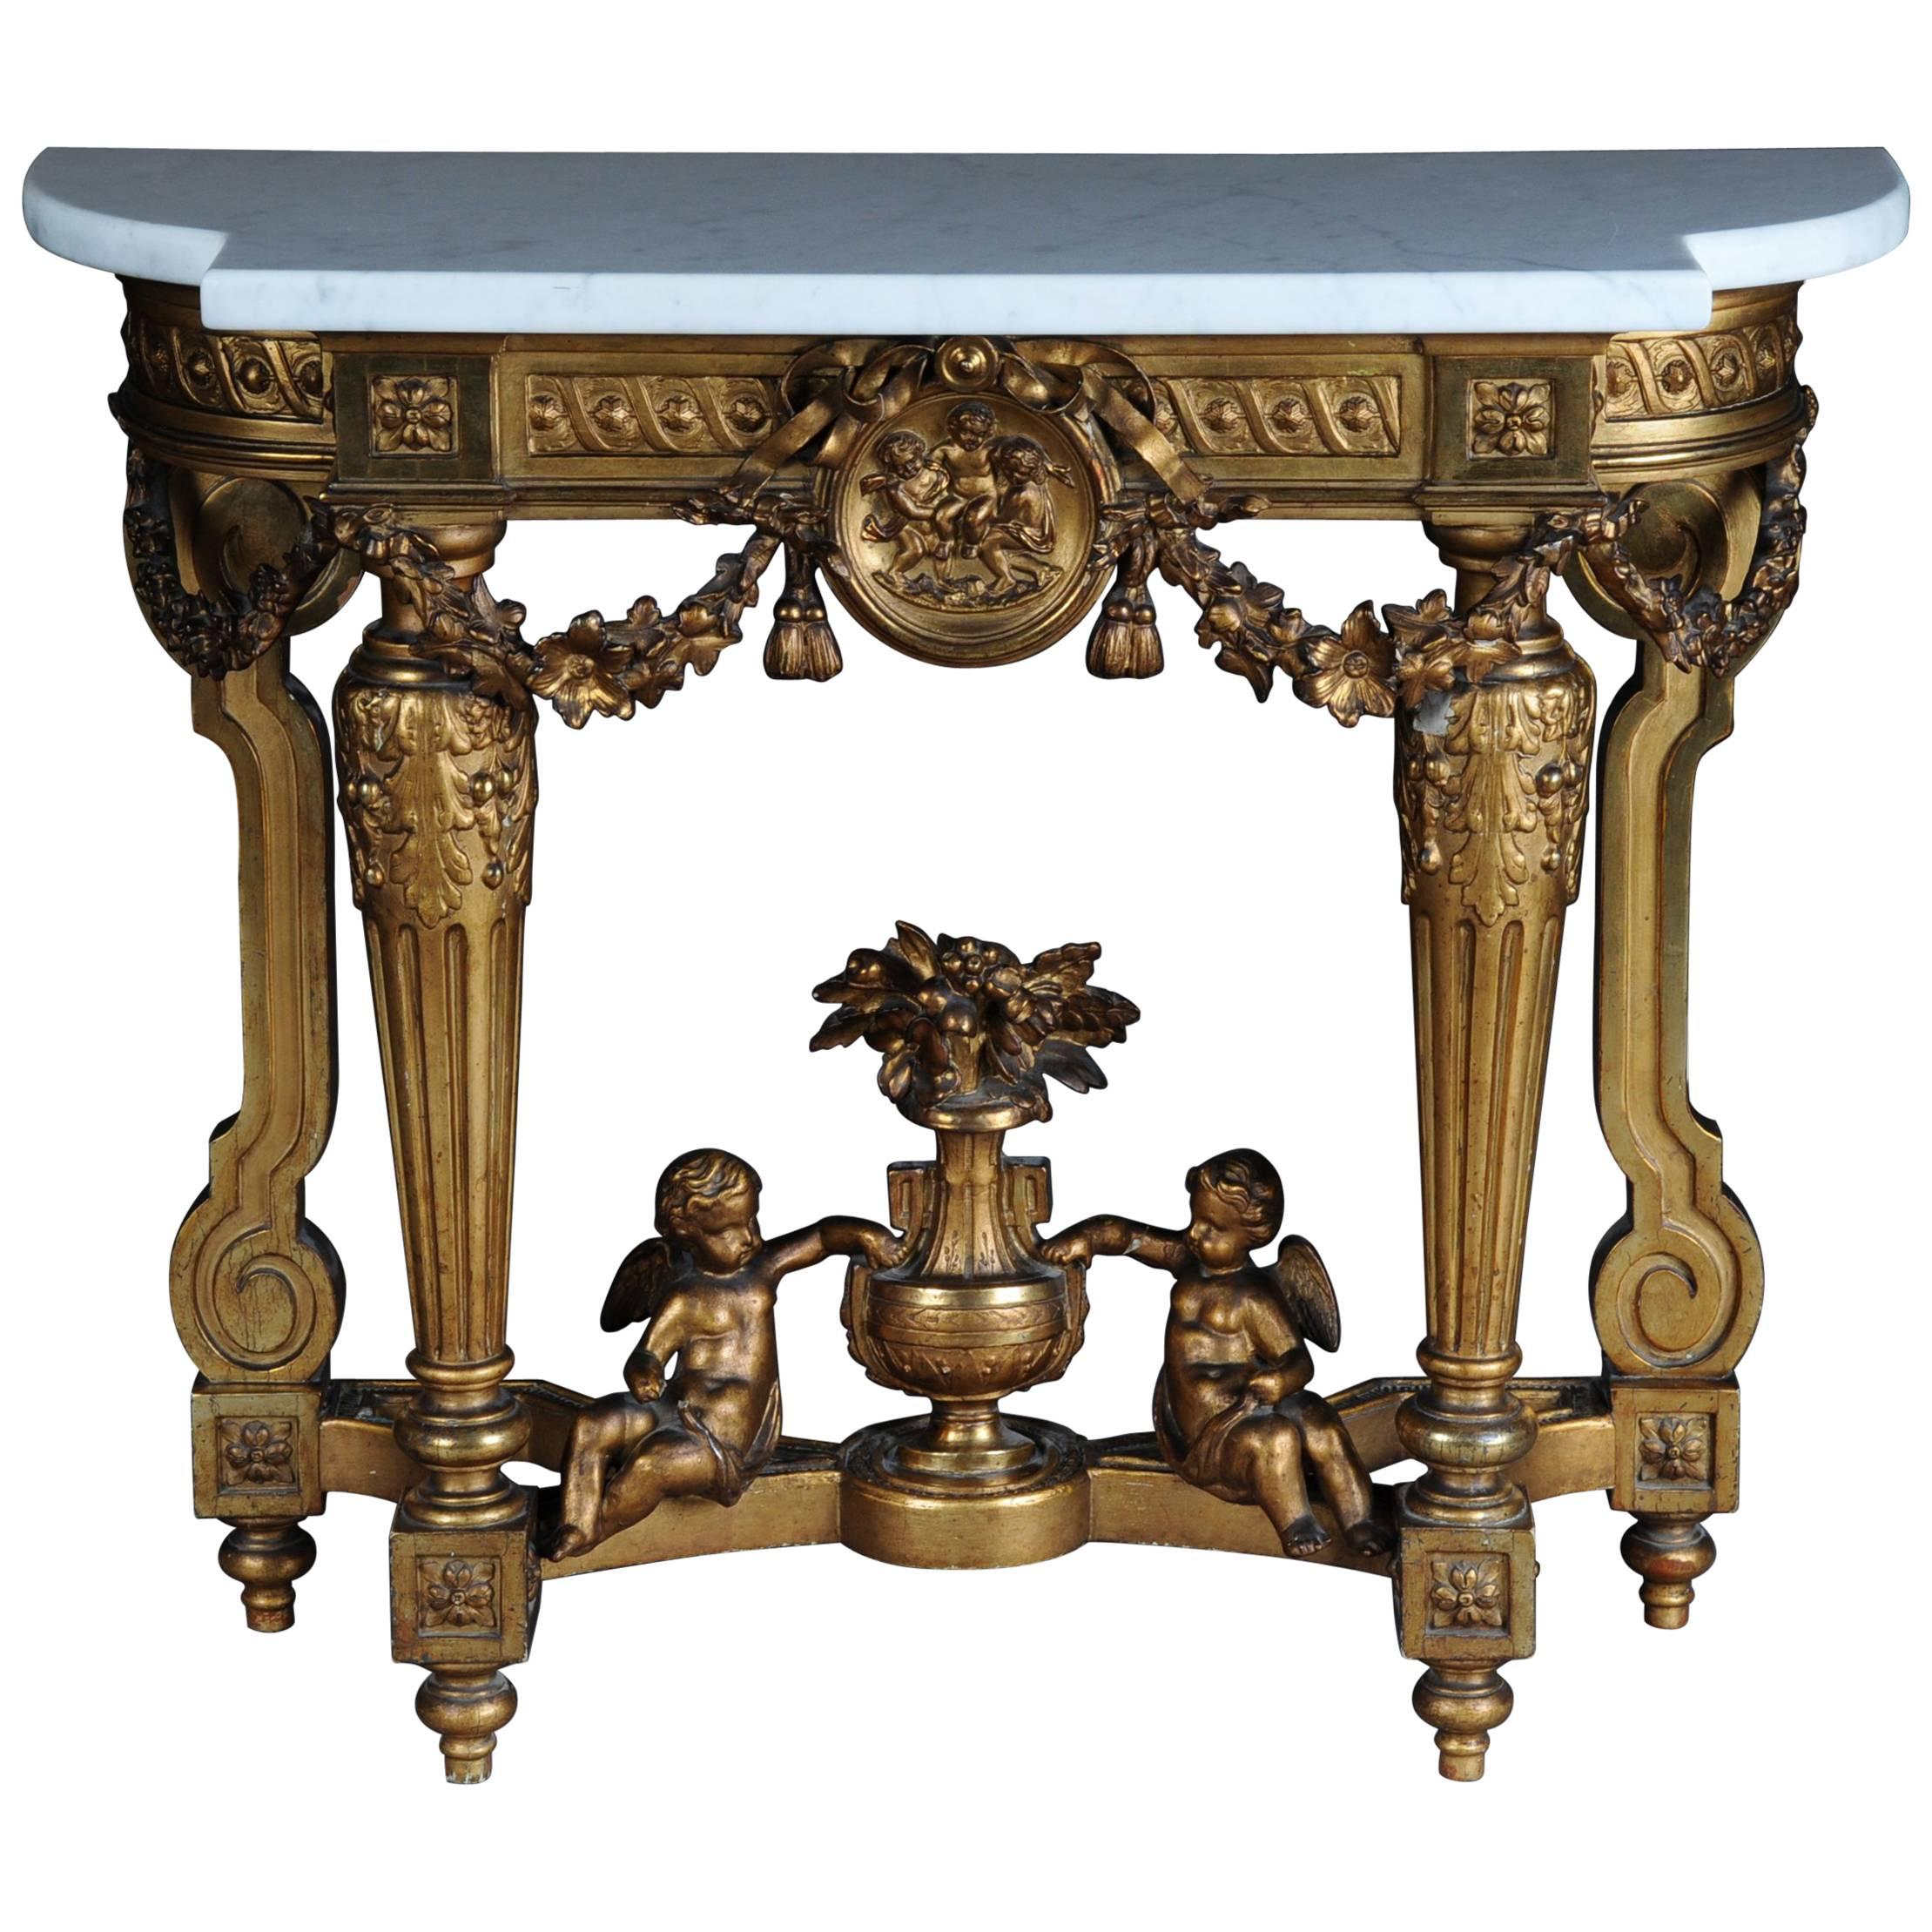 Antique French Splendor Console Table, circa 1860